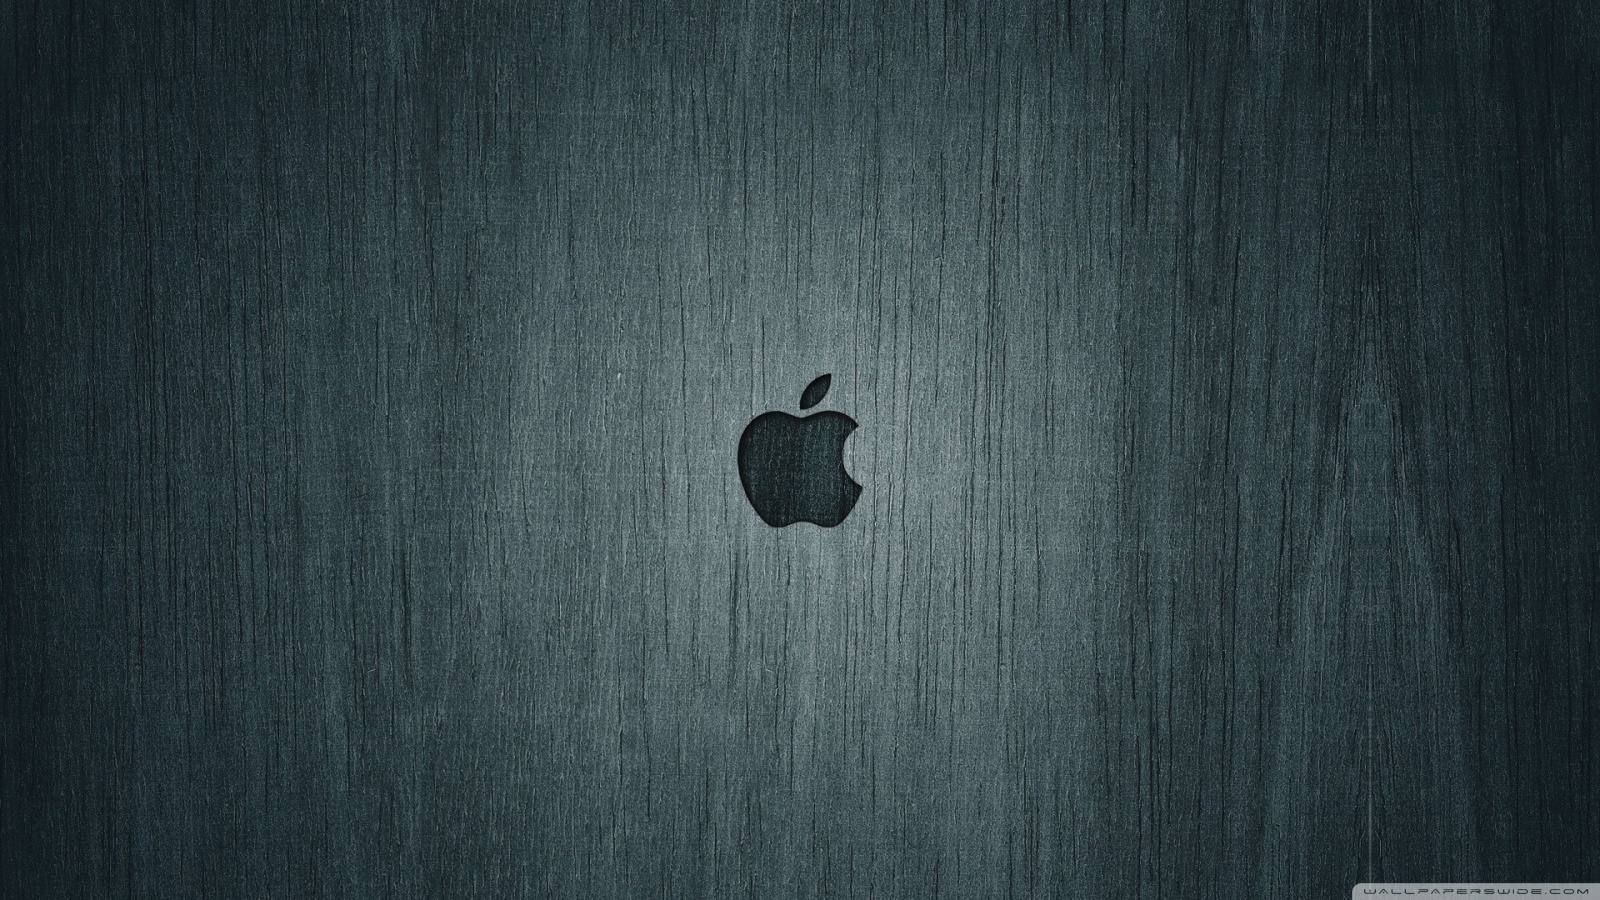 Apple Logo HD desktop wallpaper : Widescreen : High Definition ...